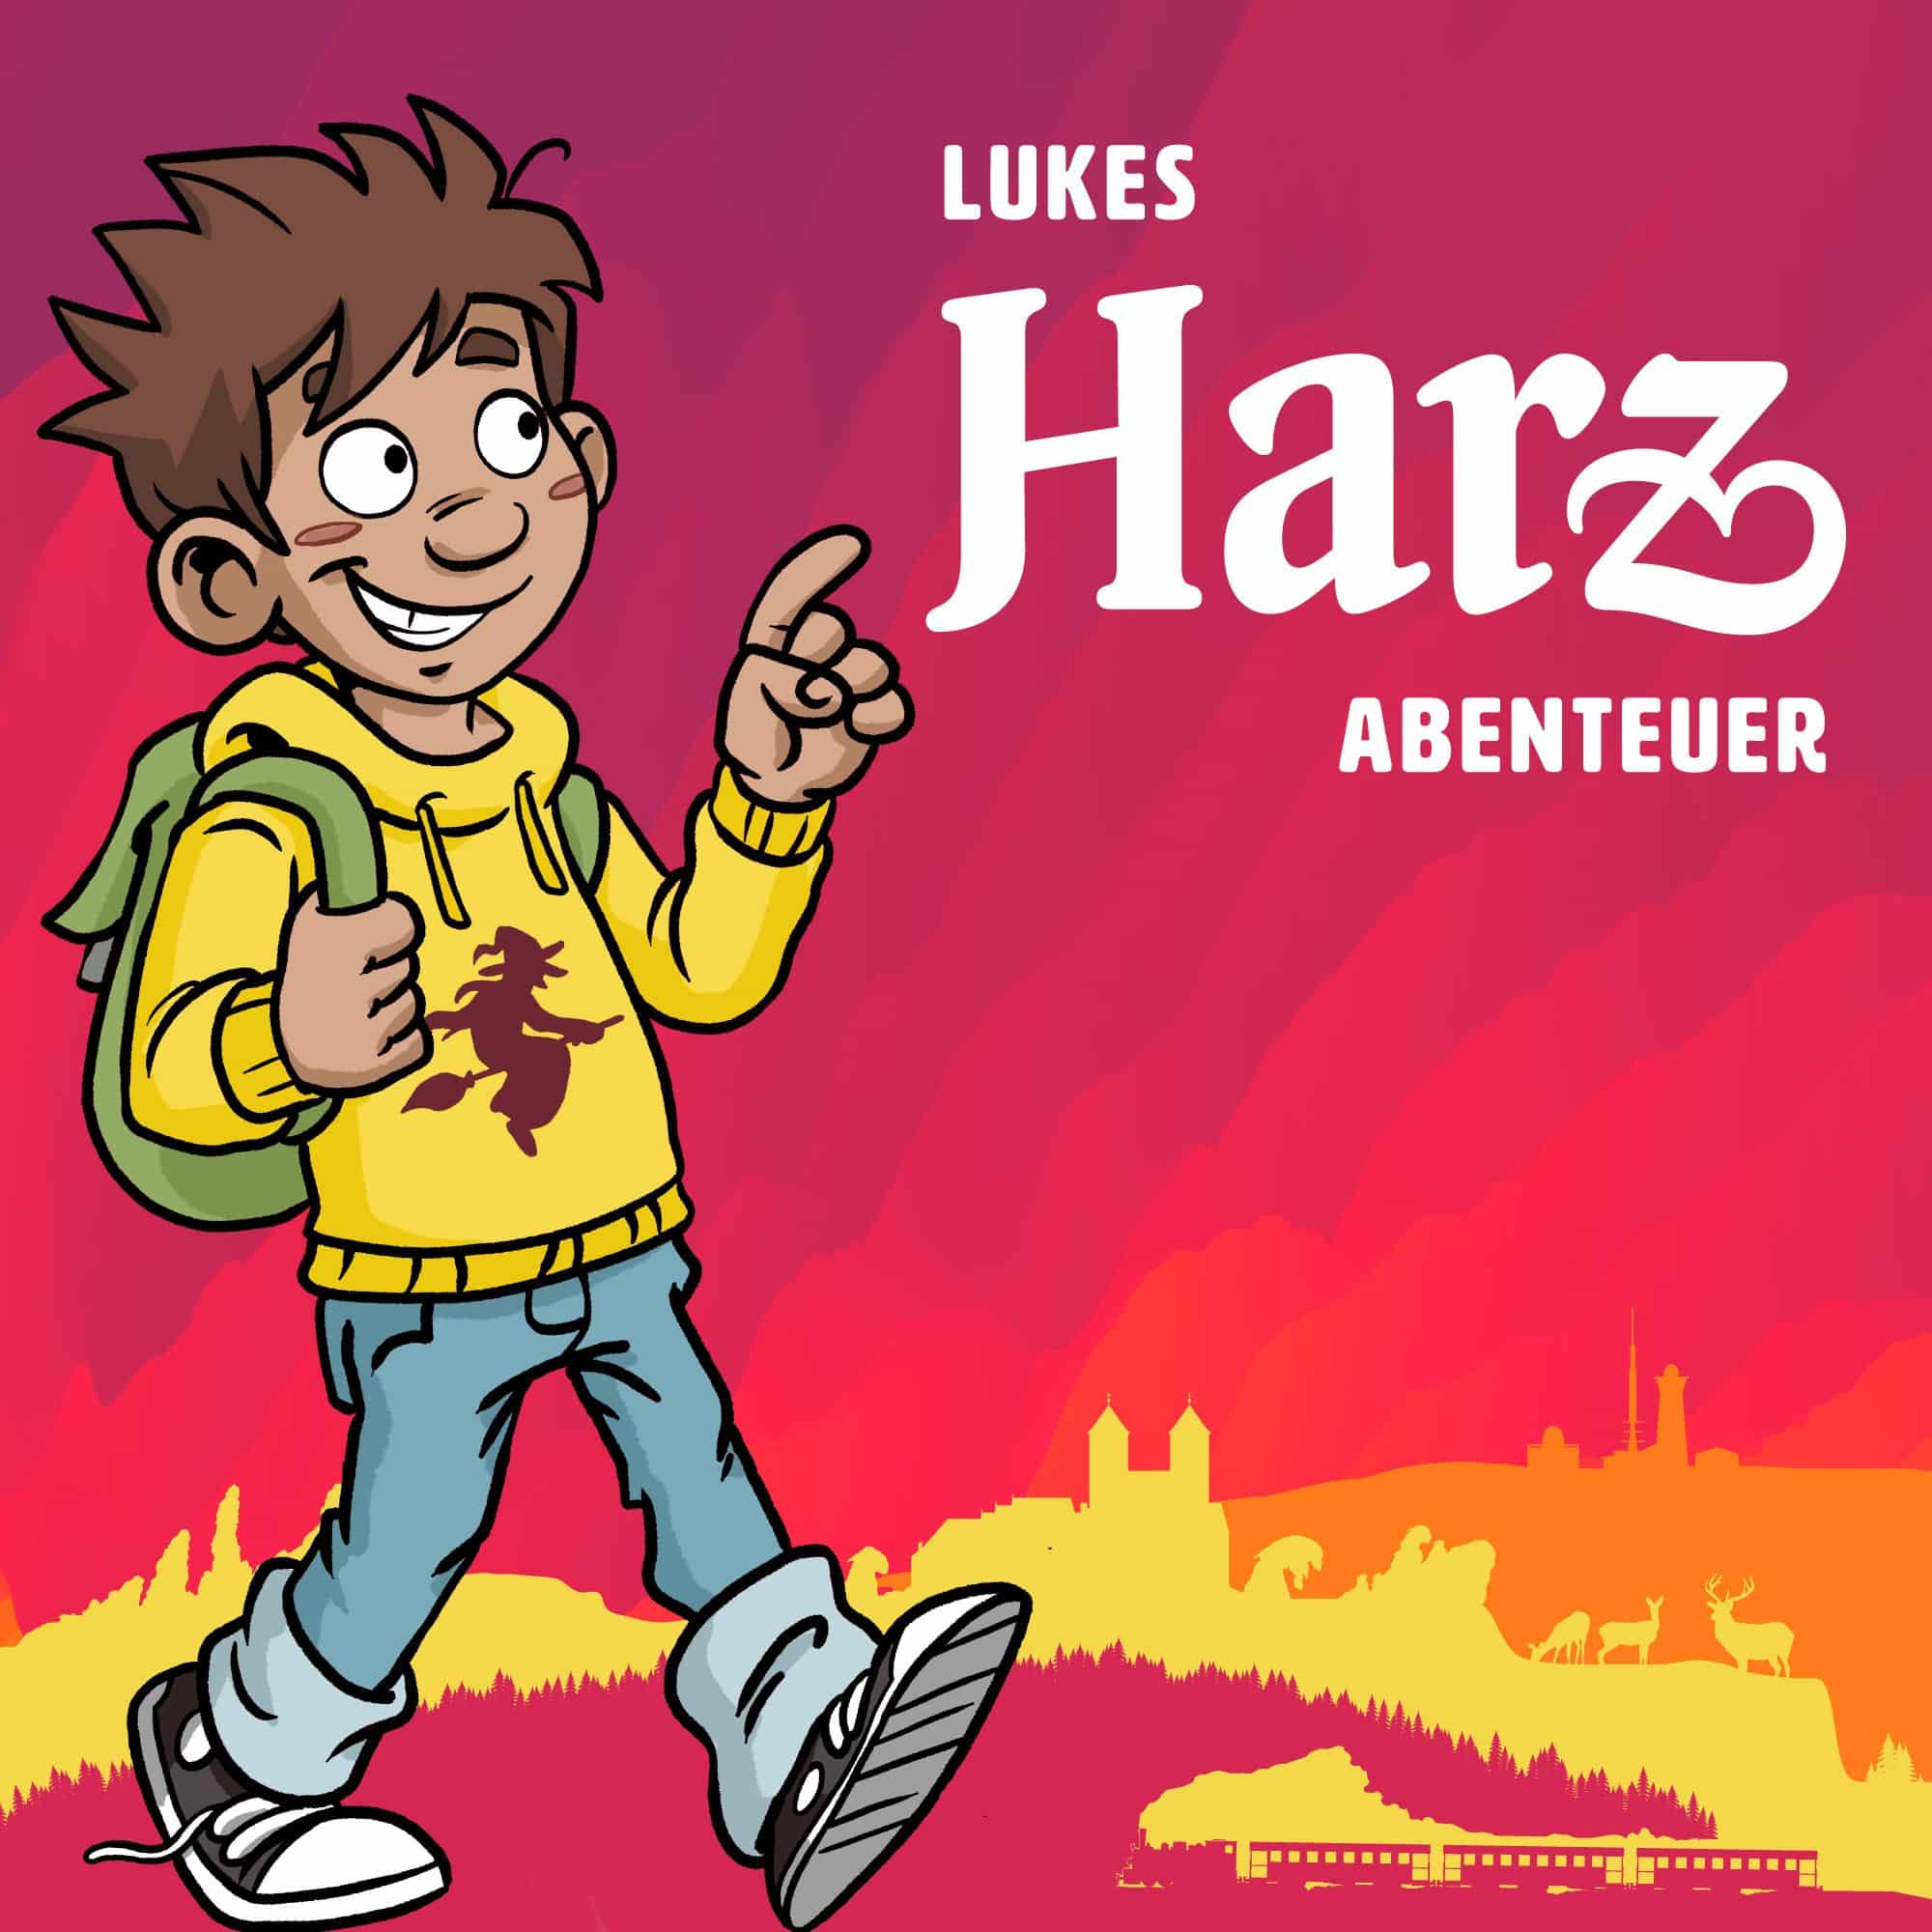 Lukes Harz Abenteuer von der Brockenbande der Reise und Tourismus Podcast